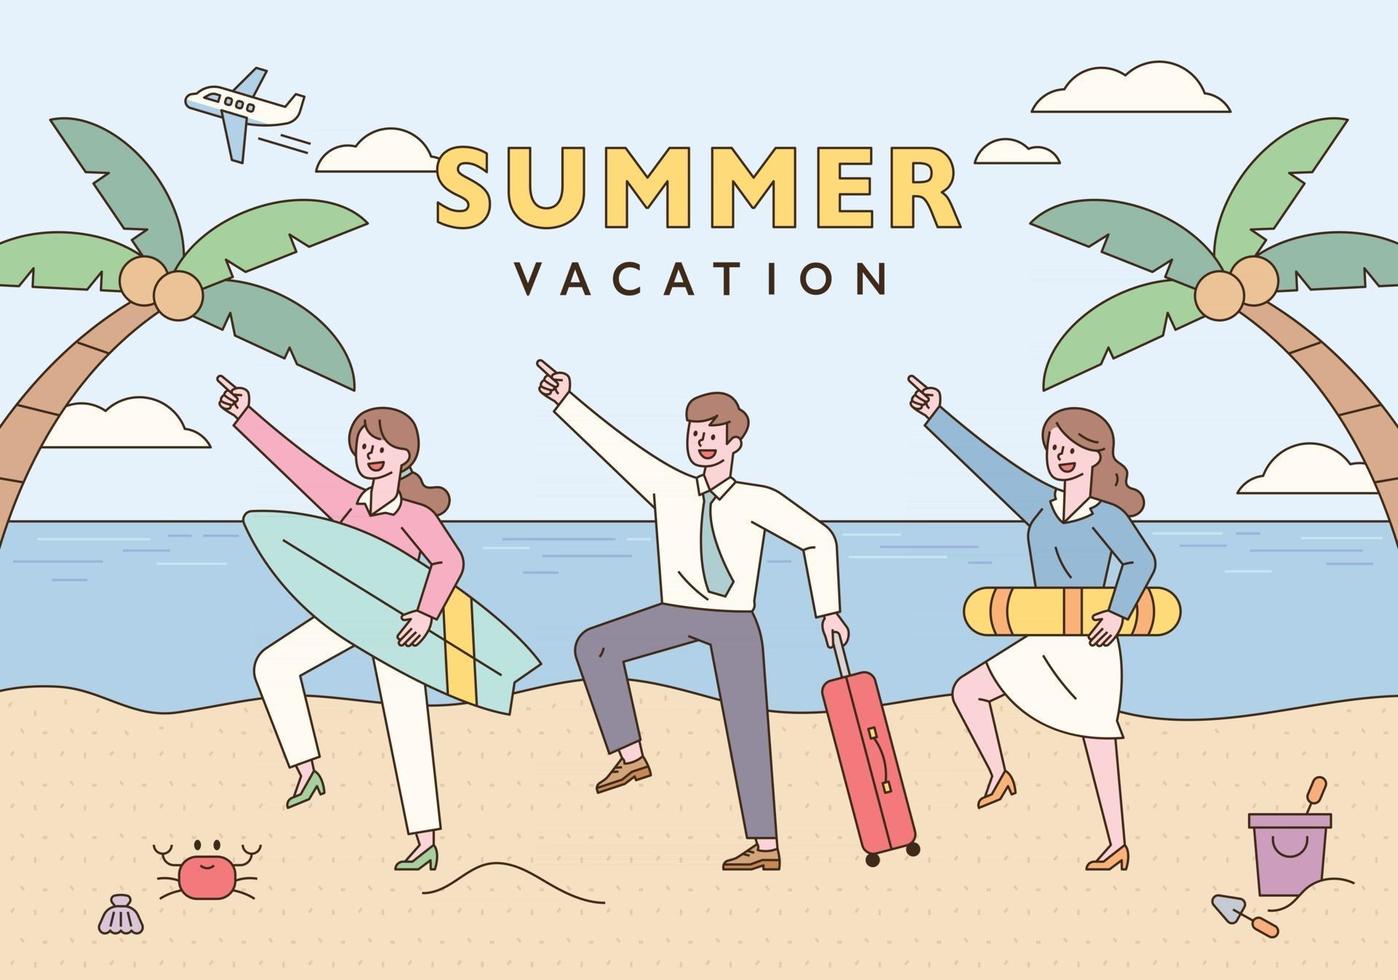 empresários fazendo poses engraçadas com pranchas de surf, tubos de natação e malas. cartaz de fundo de praia com palmeiras. ilustração em vetor mínimo estilo design plano.